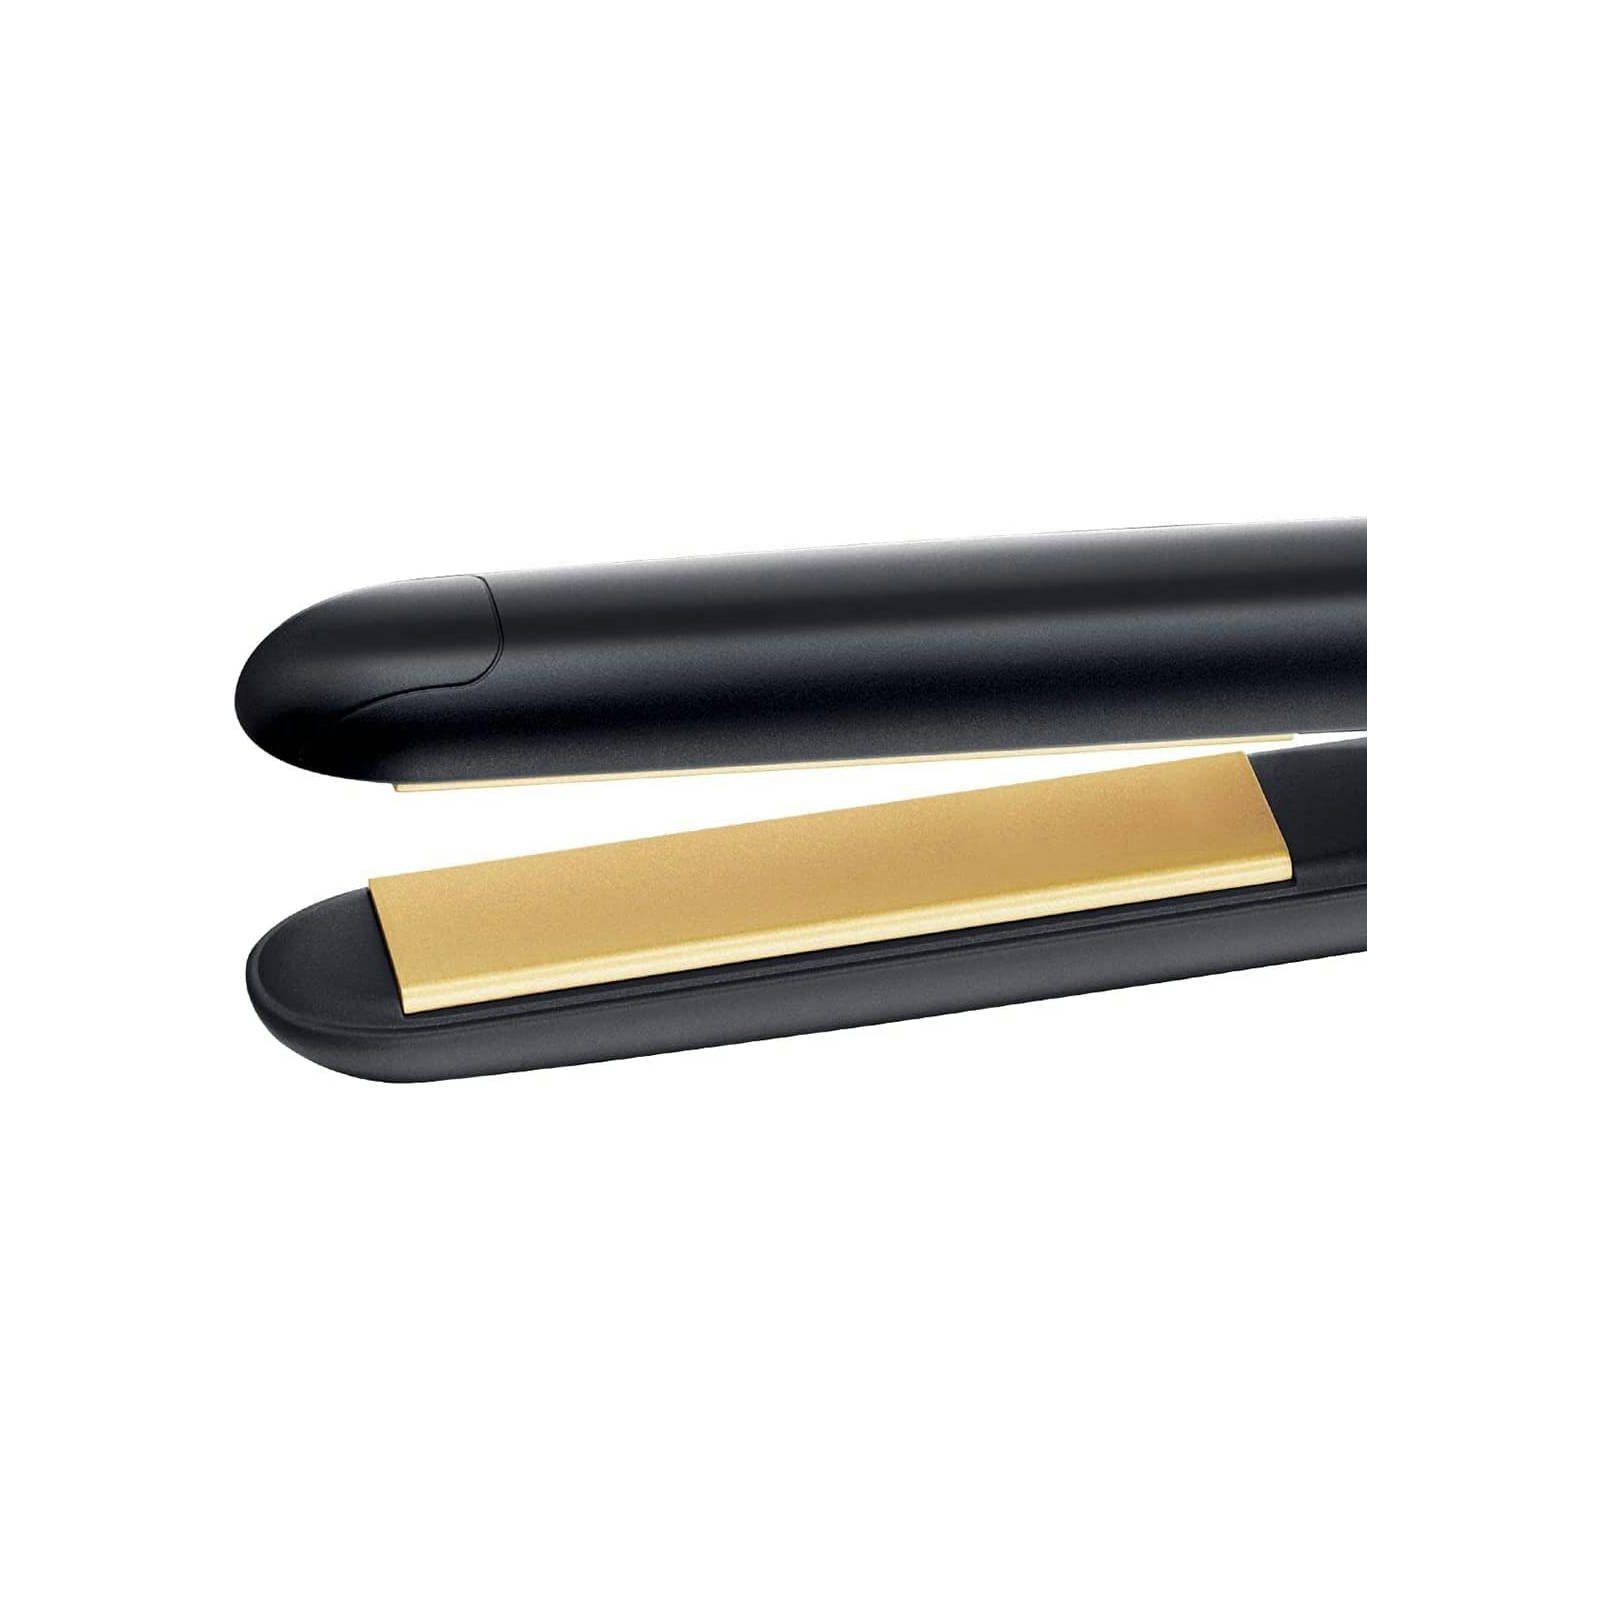 Remington Glätteisen Glätteisen bis 215°C Haarglätter keramikbeschichtet gleichmäßige schmal, S1450 Wärmeverteilung